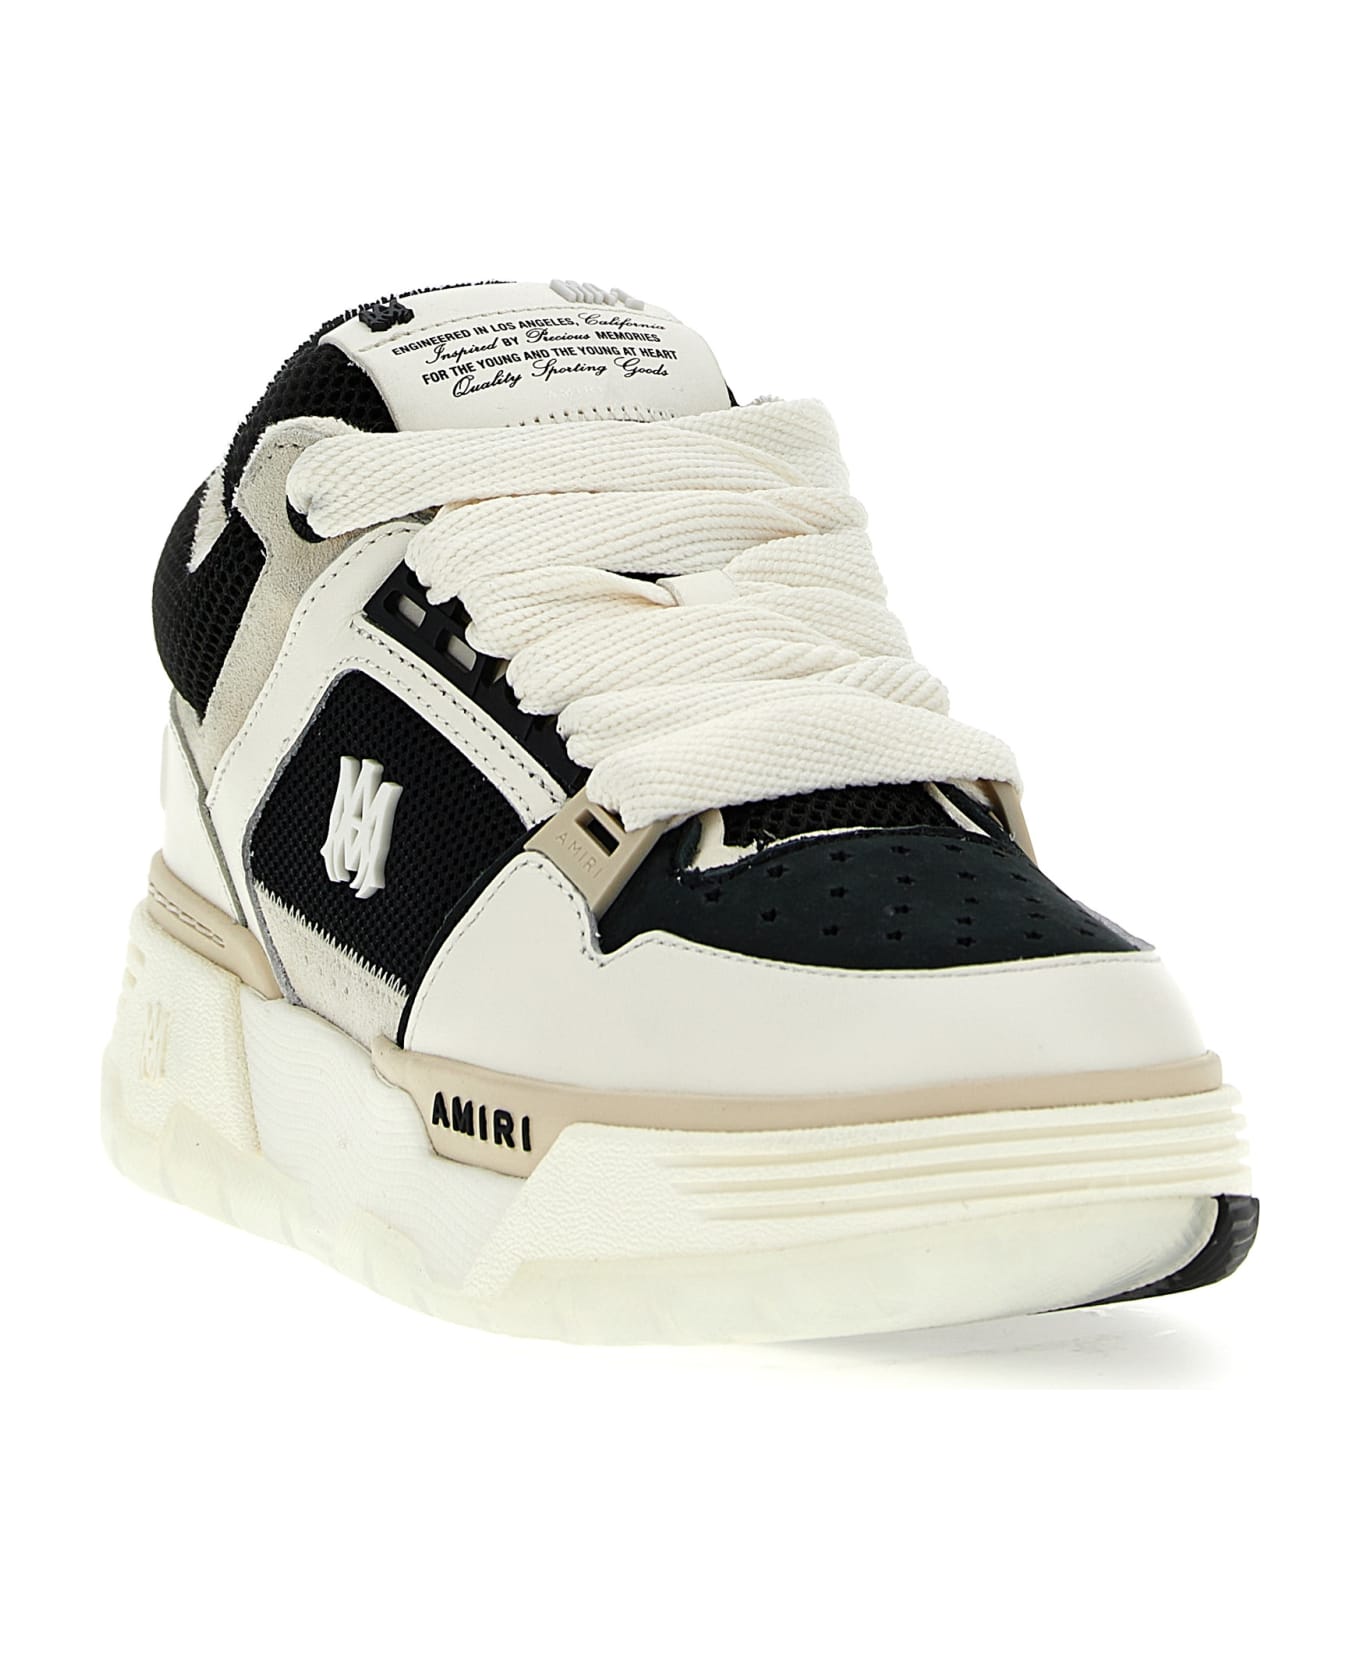 AMIRI 'ma-1' Sneakers - White/Black